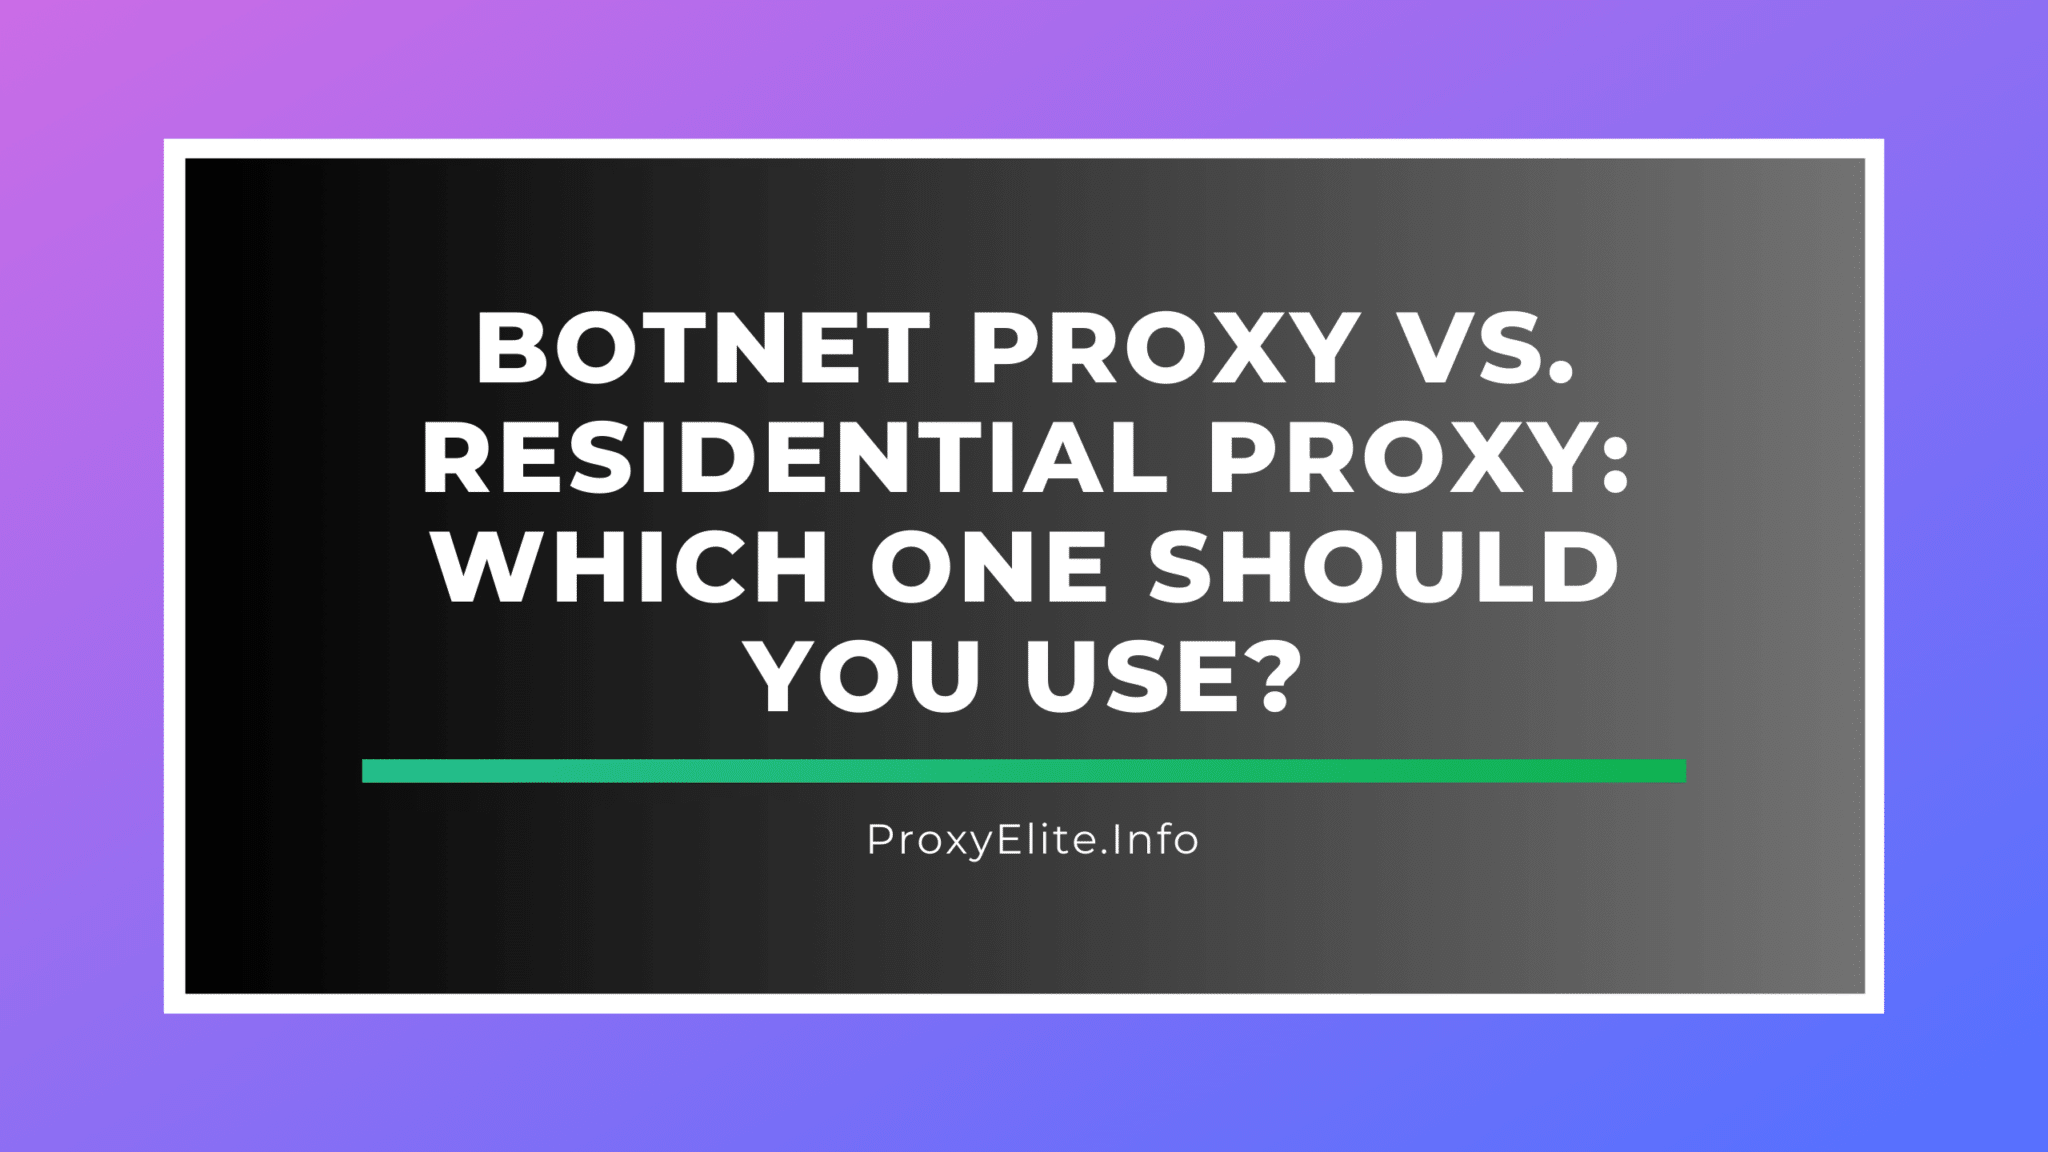 Botnet-Proxy vs. Residential Proxy: Welchen sollten Sie verwenden?